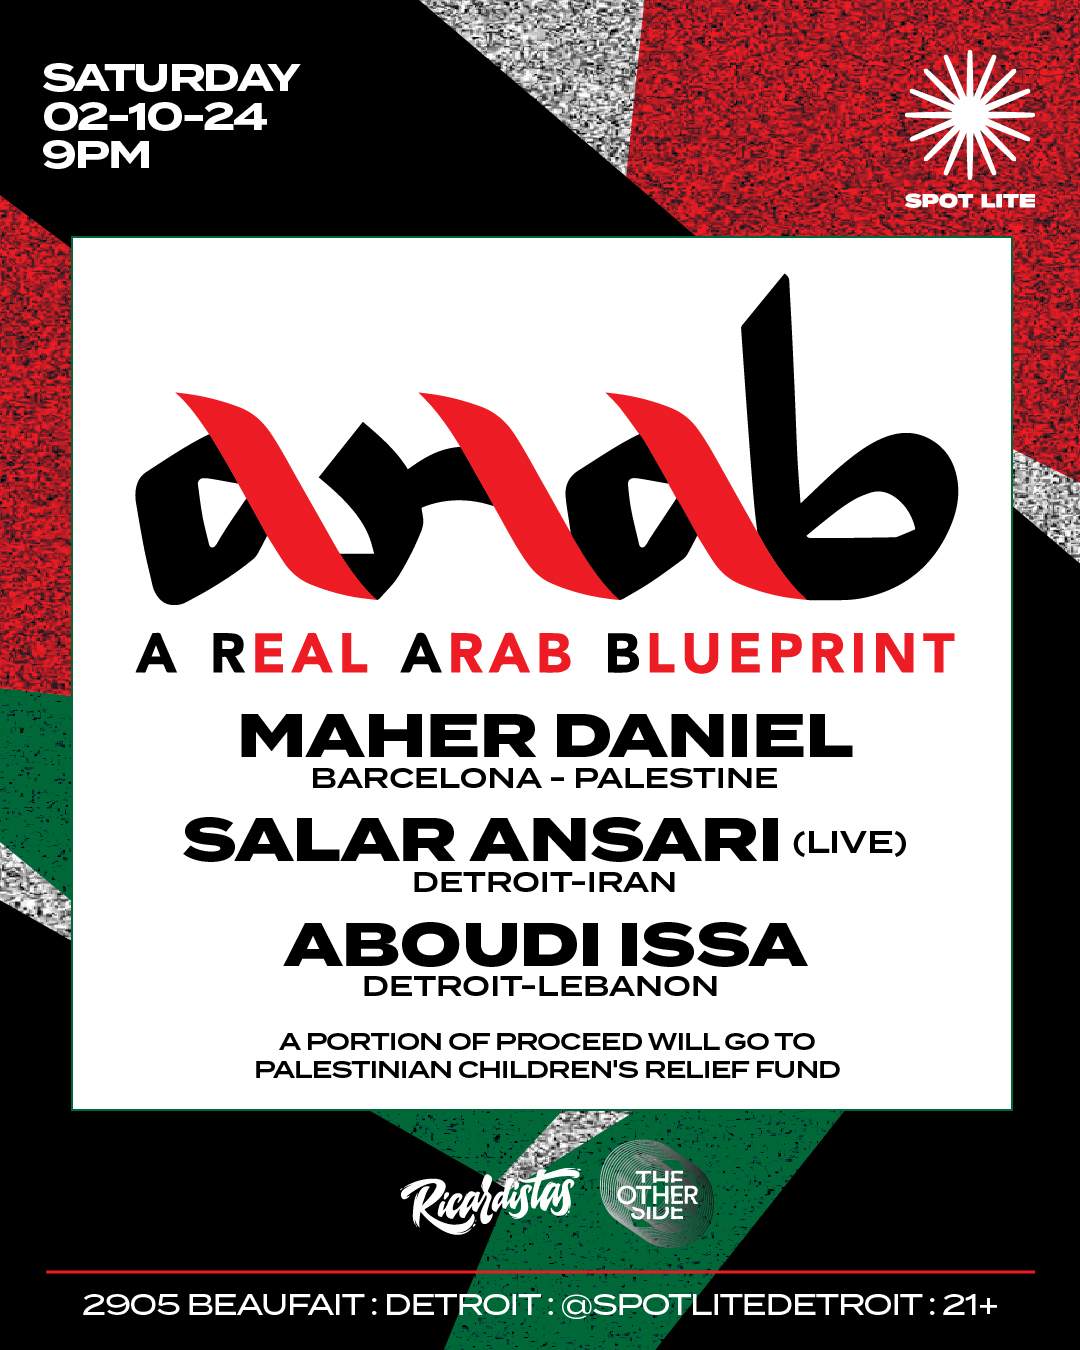 A Real Arab Blueprint presents: Maher Daniel, Salar Ansari (LIVE), Aboudi Issa - フライヤー表